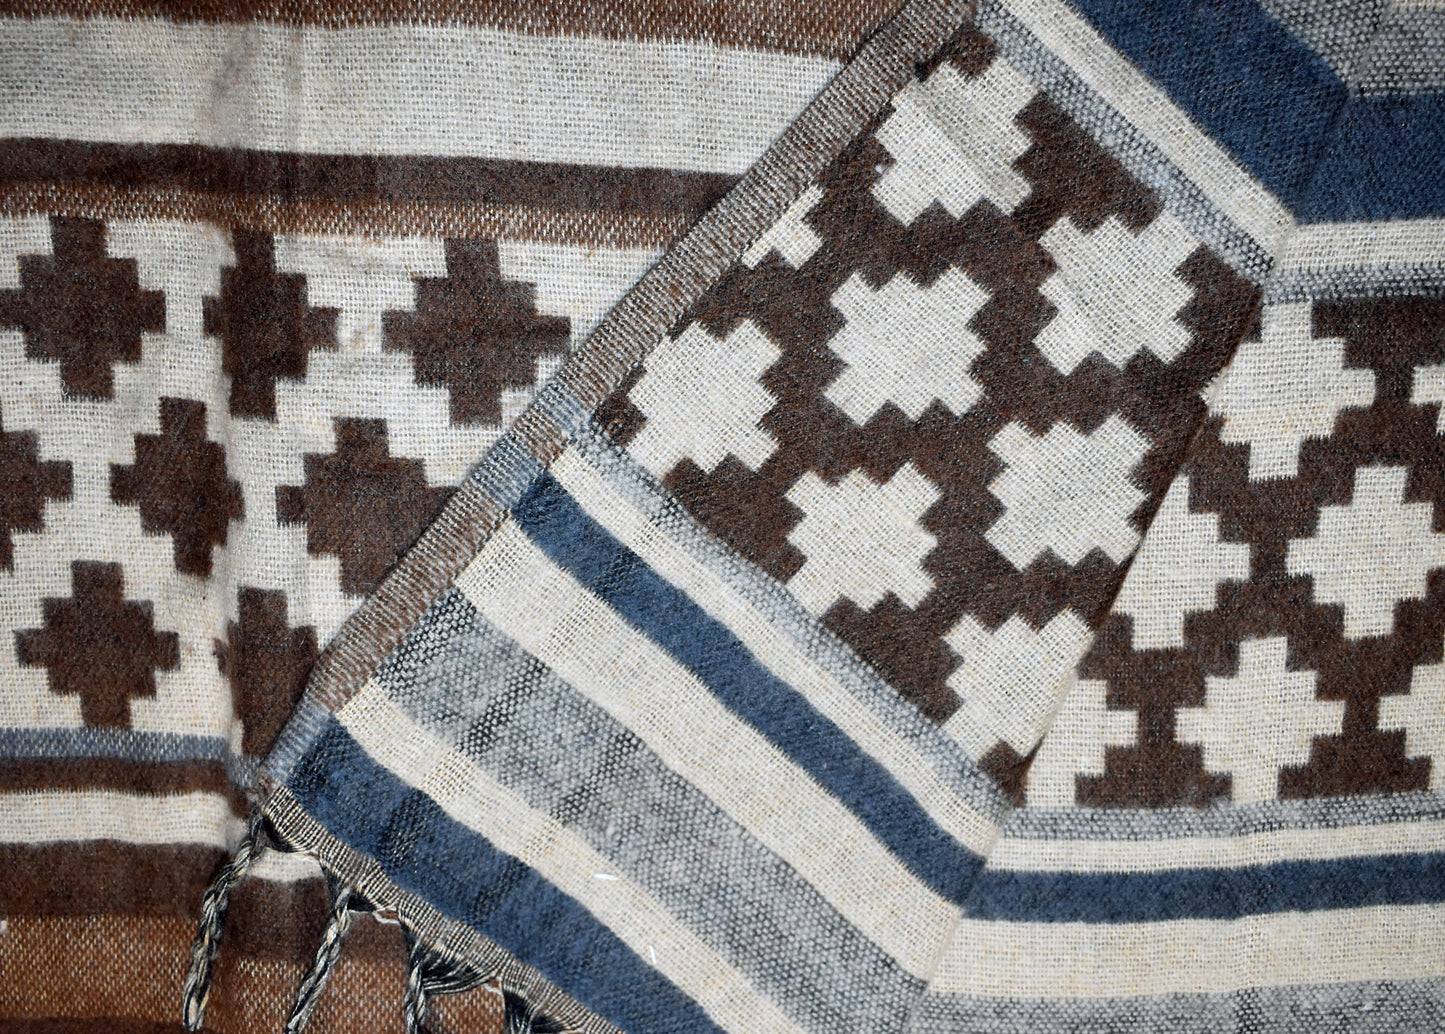 Criss Cross Pattern Fleece Blanket Shawl